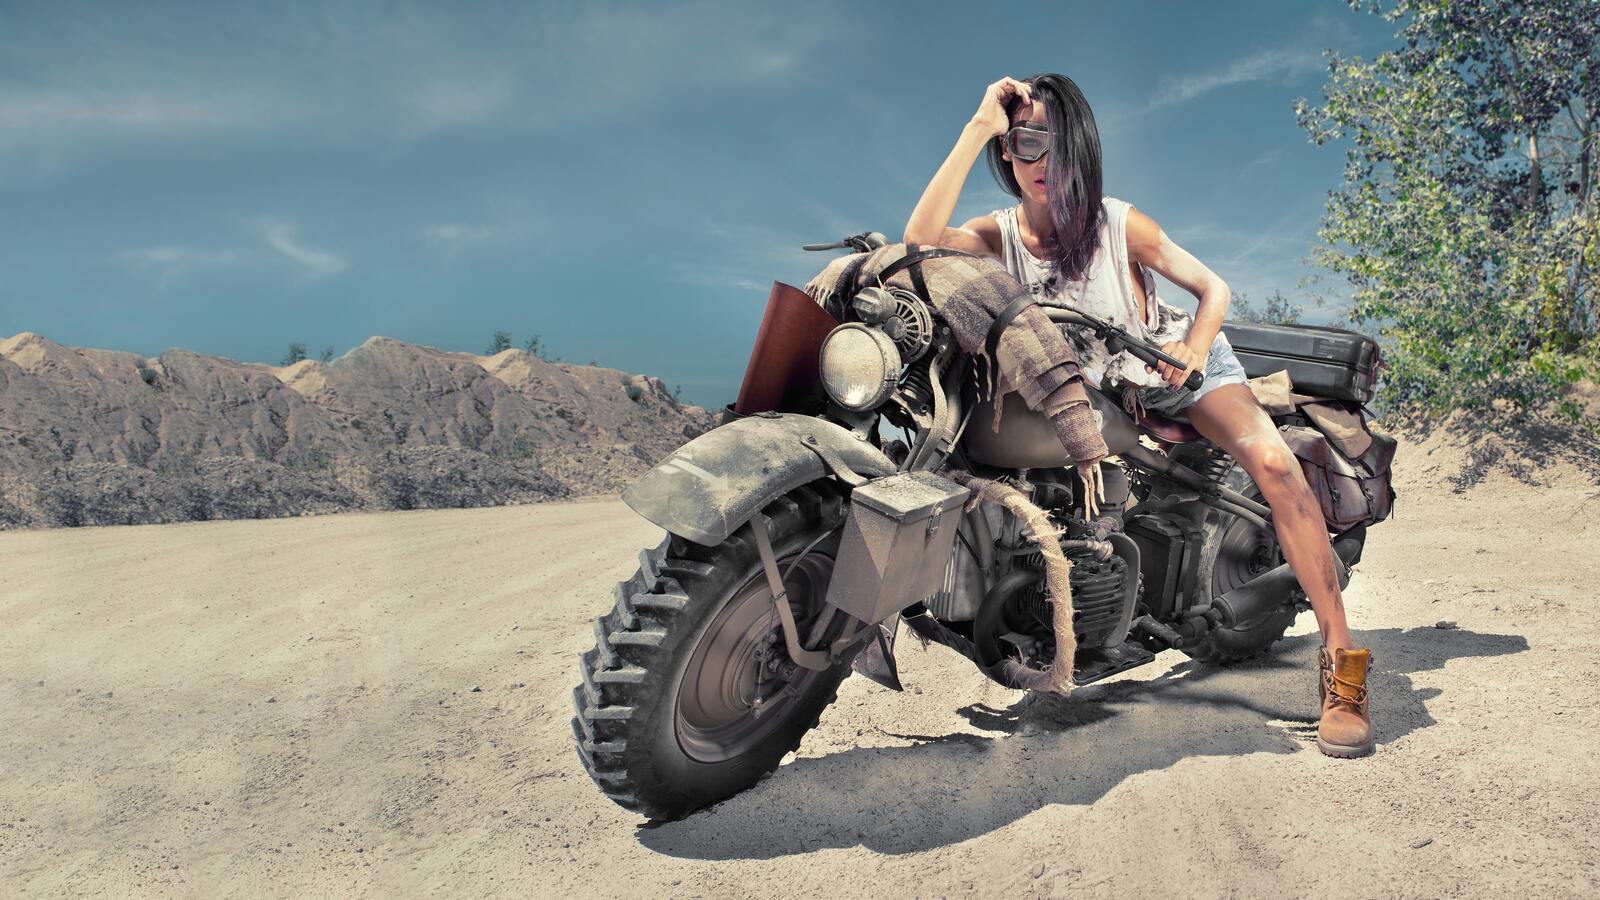 免费照片女孩在沙漠中摆出复古摩托车的姿势